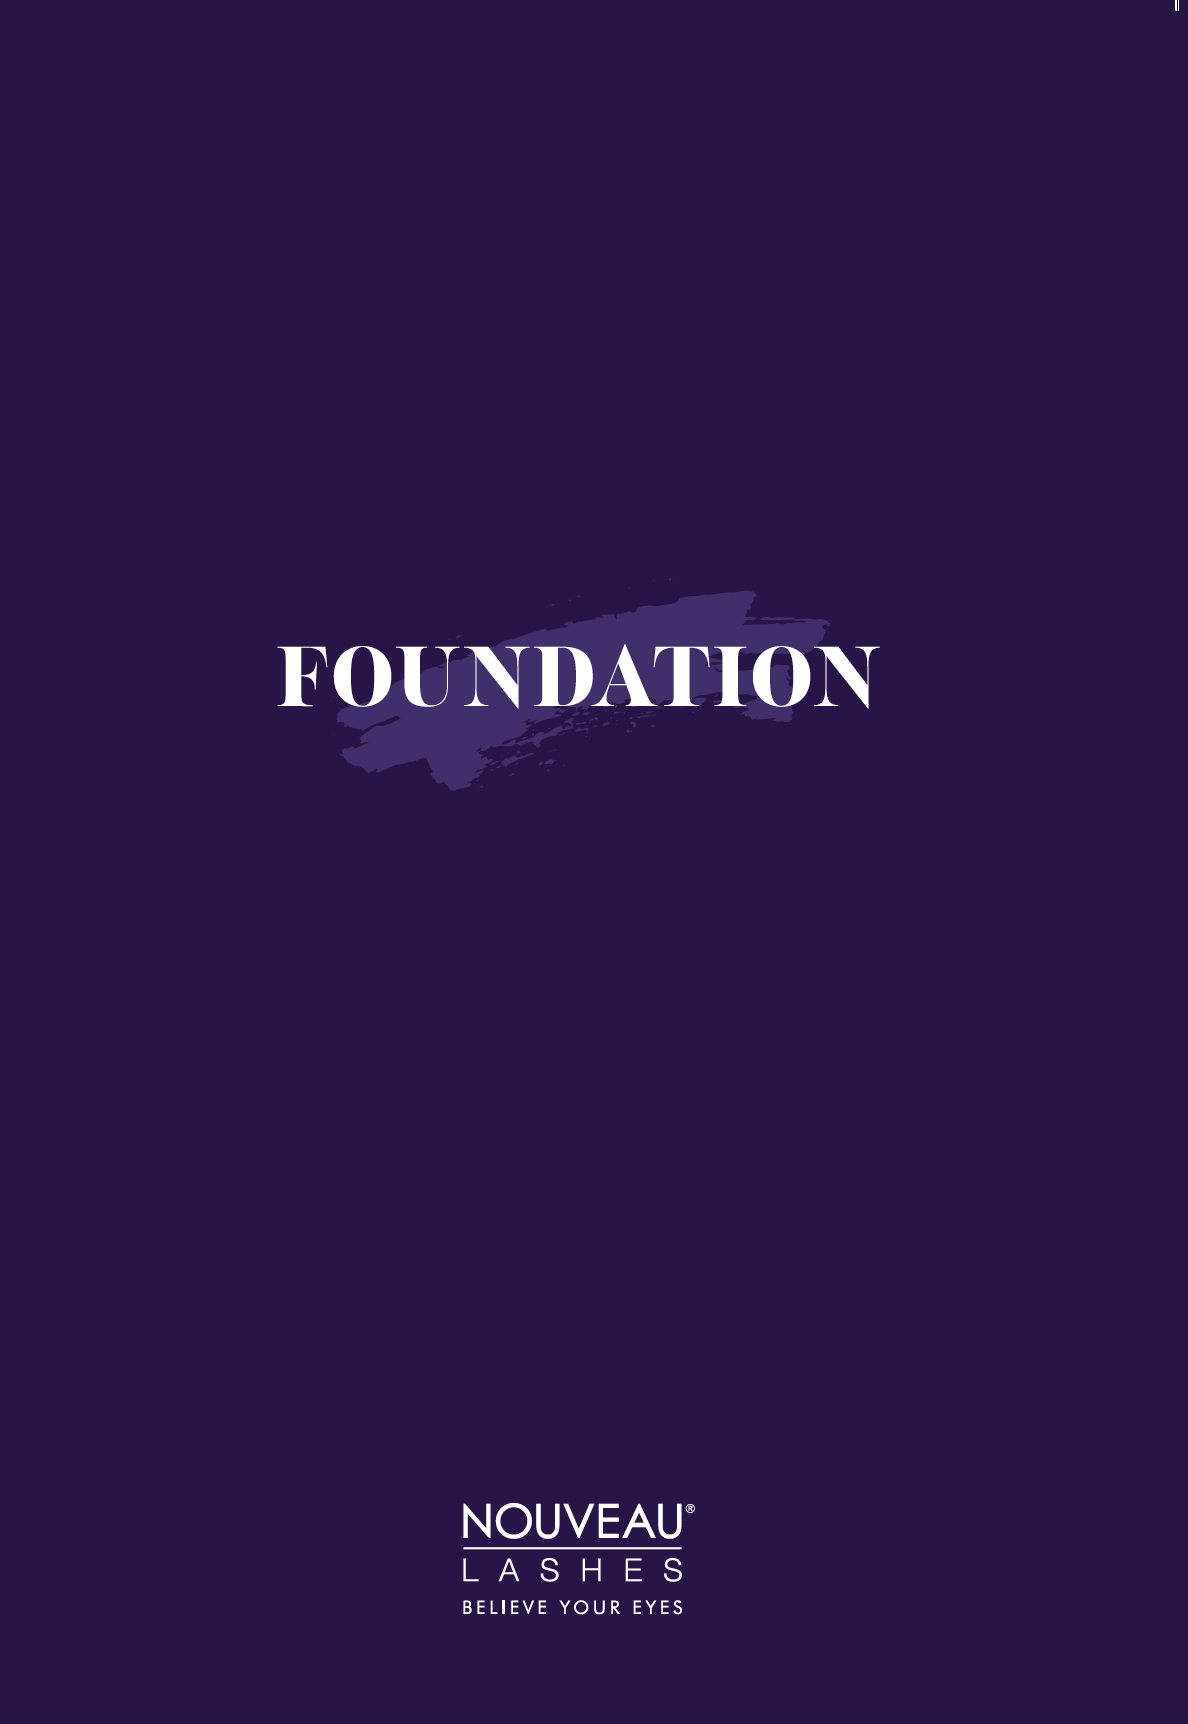 Nouveau Lashes Foundation Manual